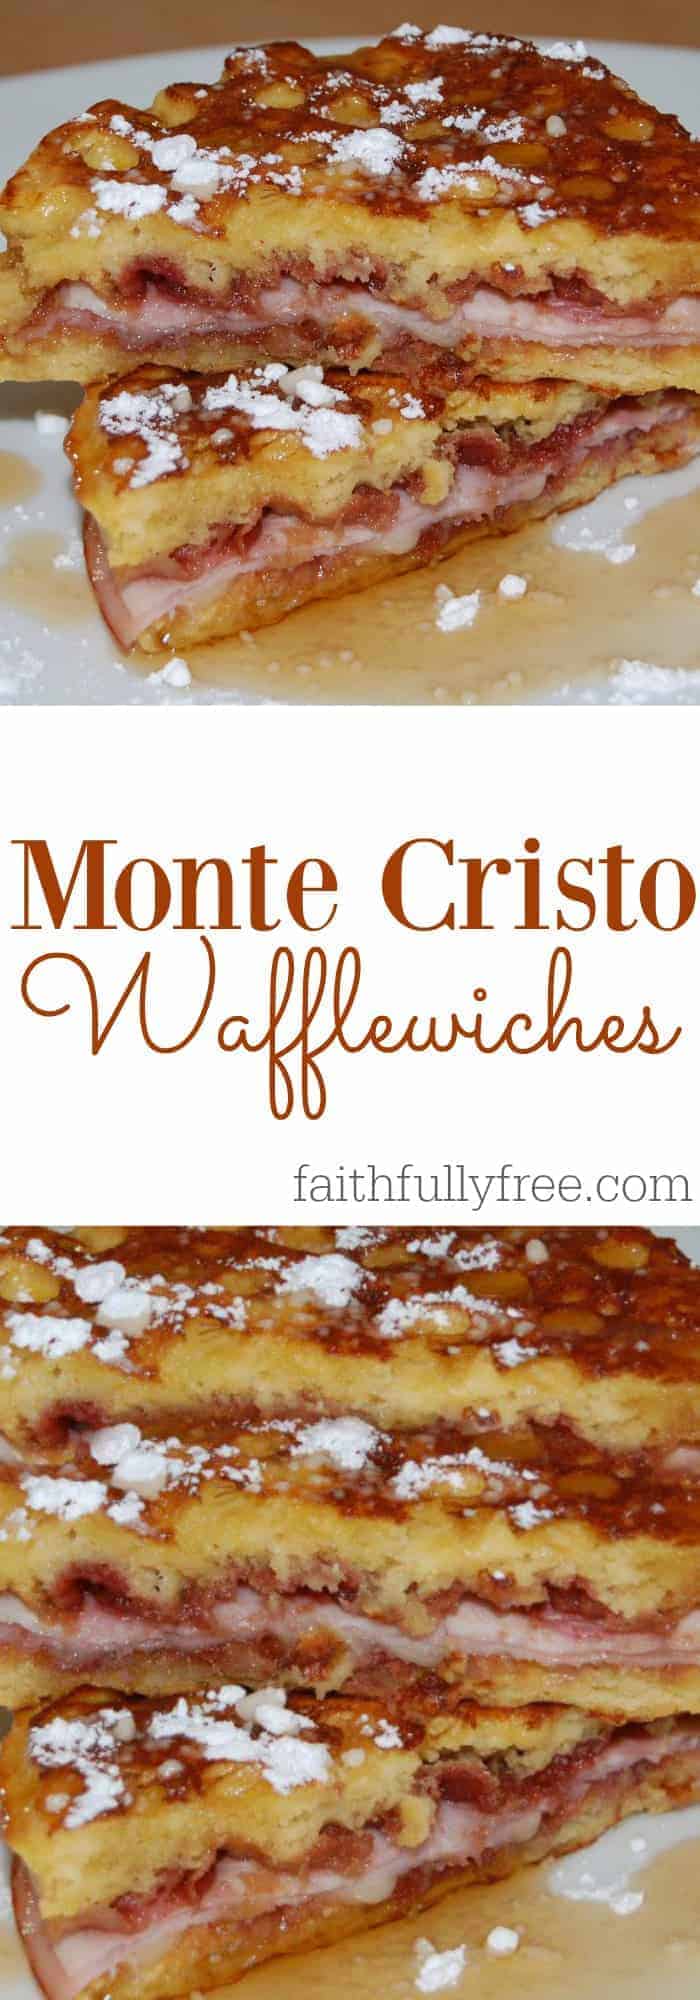 Amazing Monte Cristo Wafflewiches Recipe